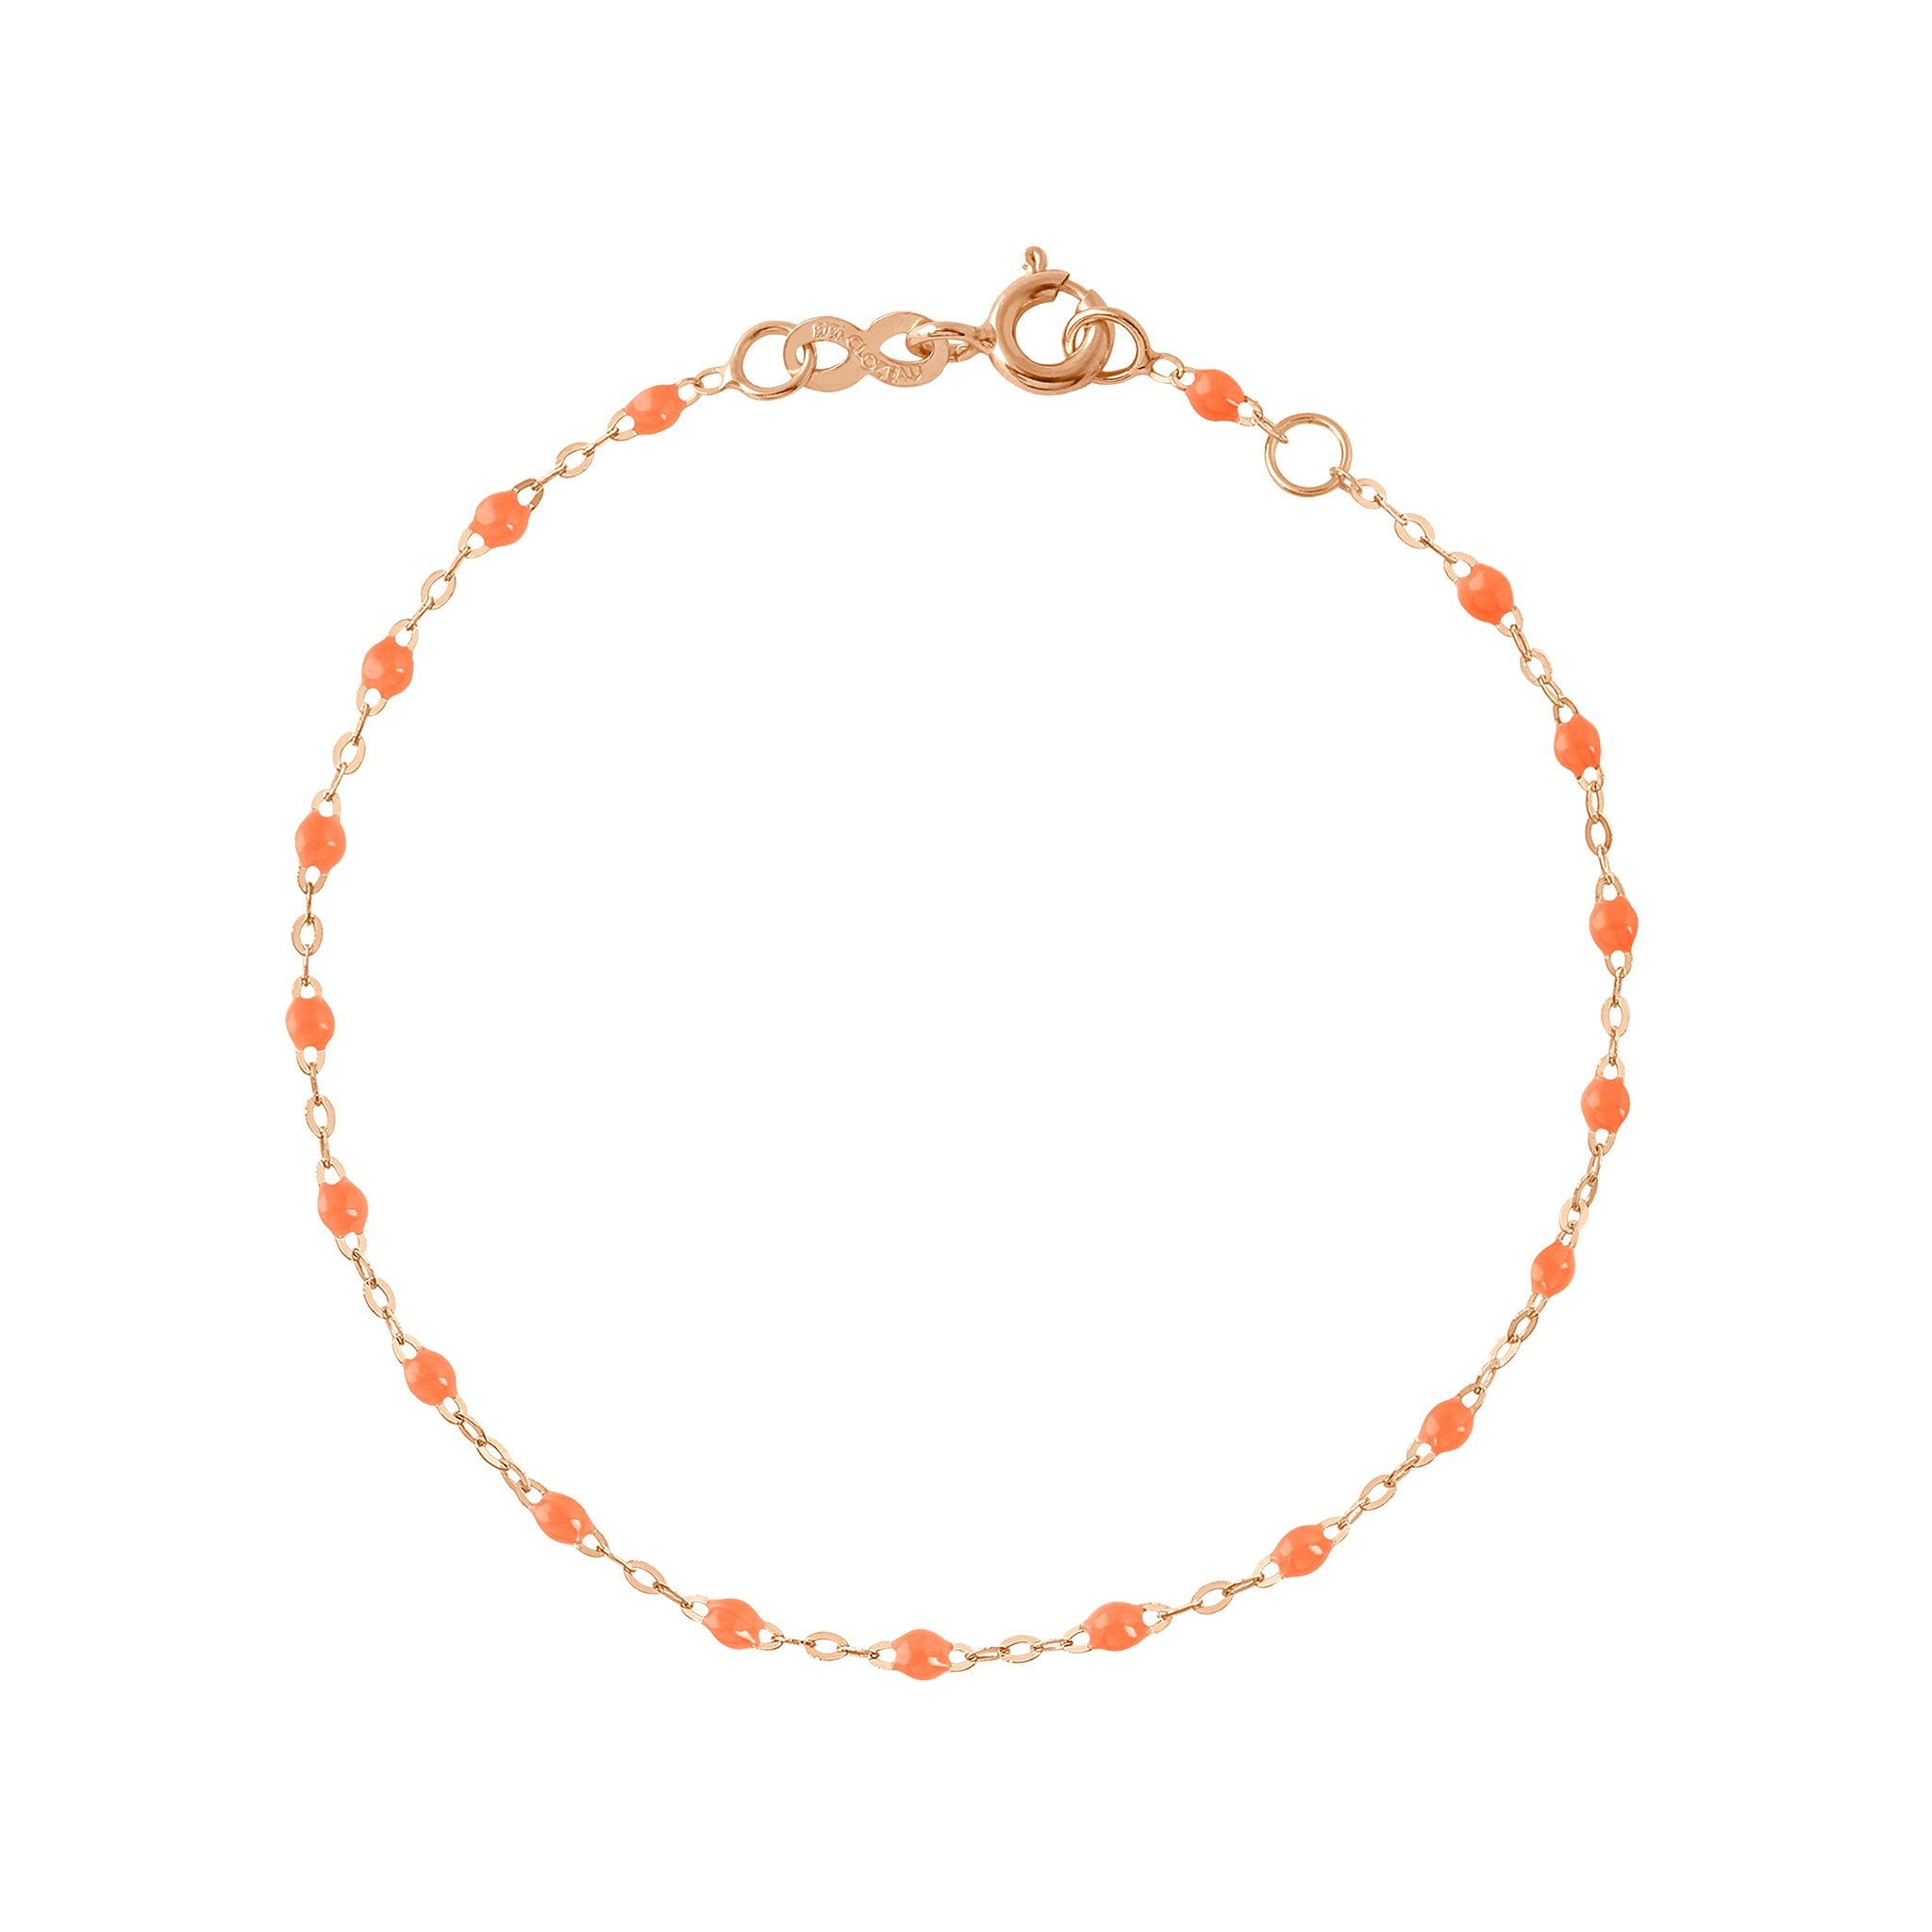 Bracelet orange fluo Classique Gigi, or rose, 18 cm classique gigi Référence :  b3gi001r1318xx -1